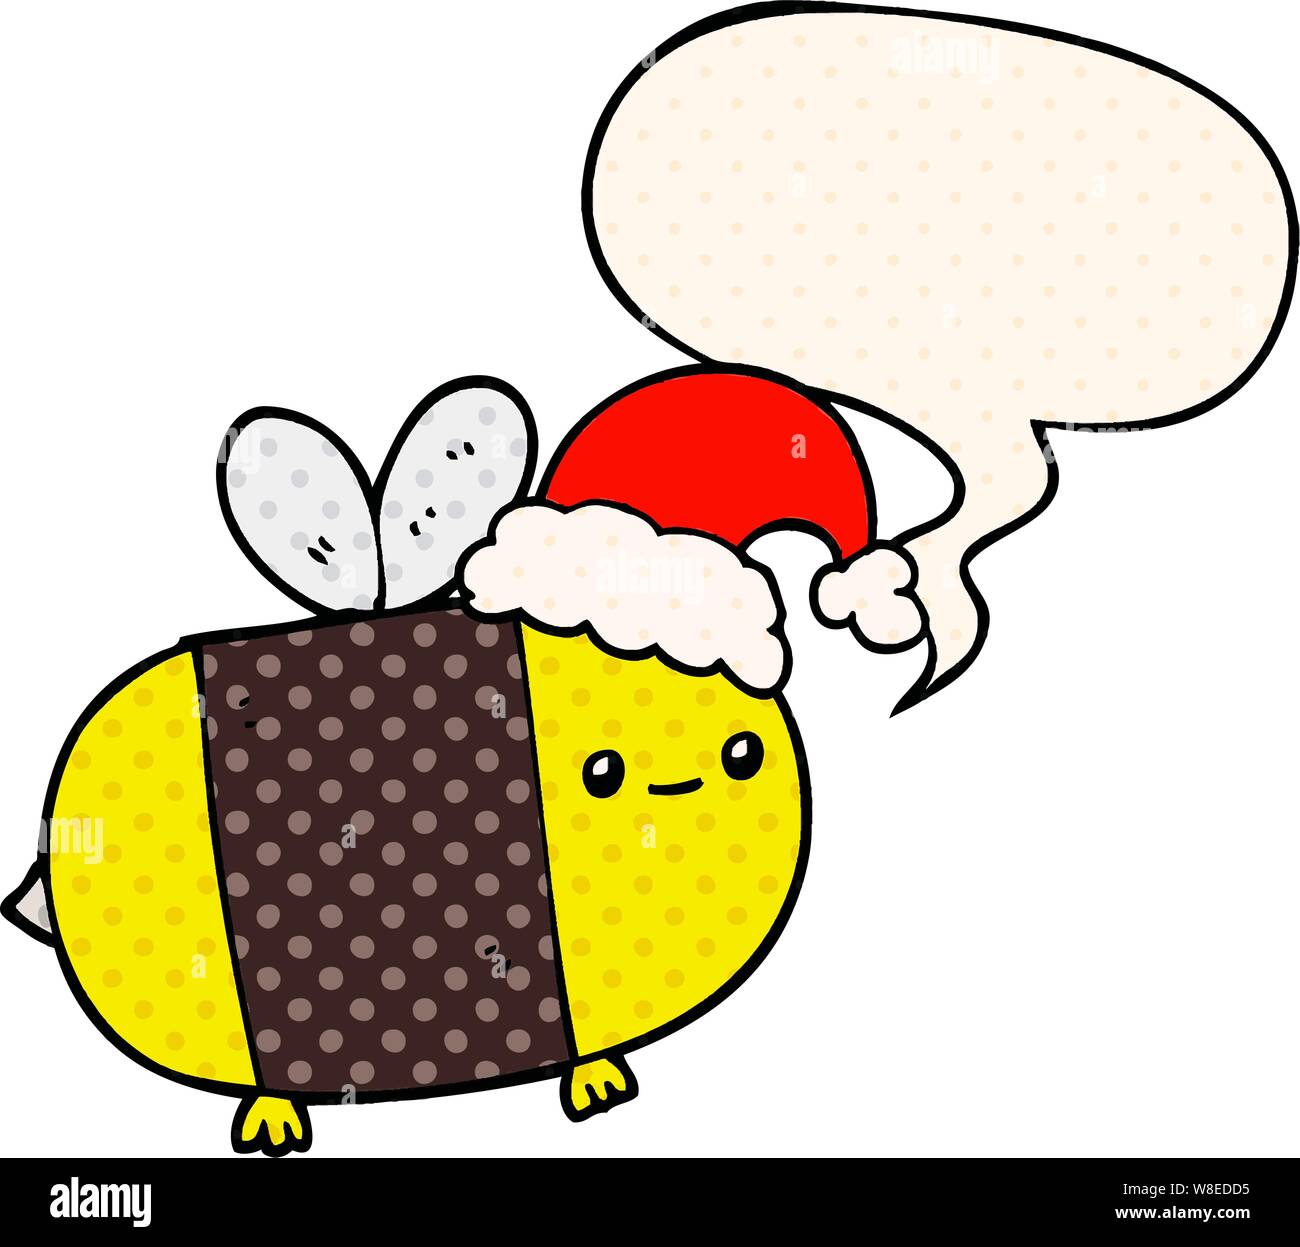 Cartoon Weihnachten Biene Mit Sprechblasen Im Comic Stil Stock Vektorgrafik Alamy